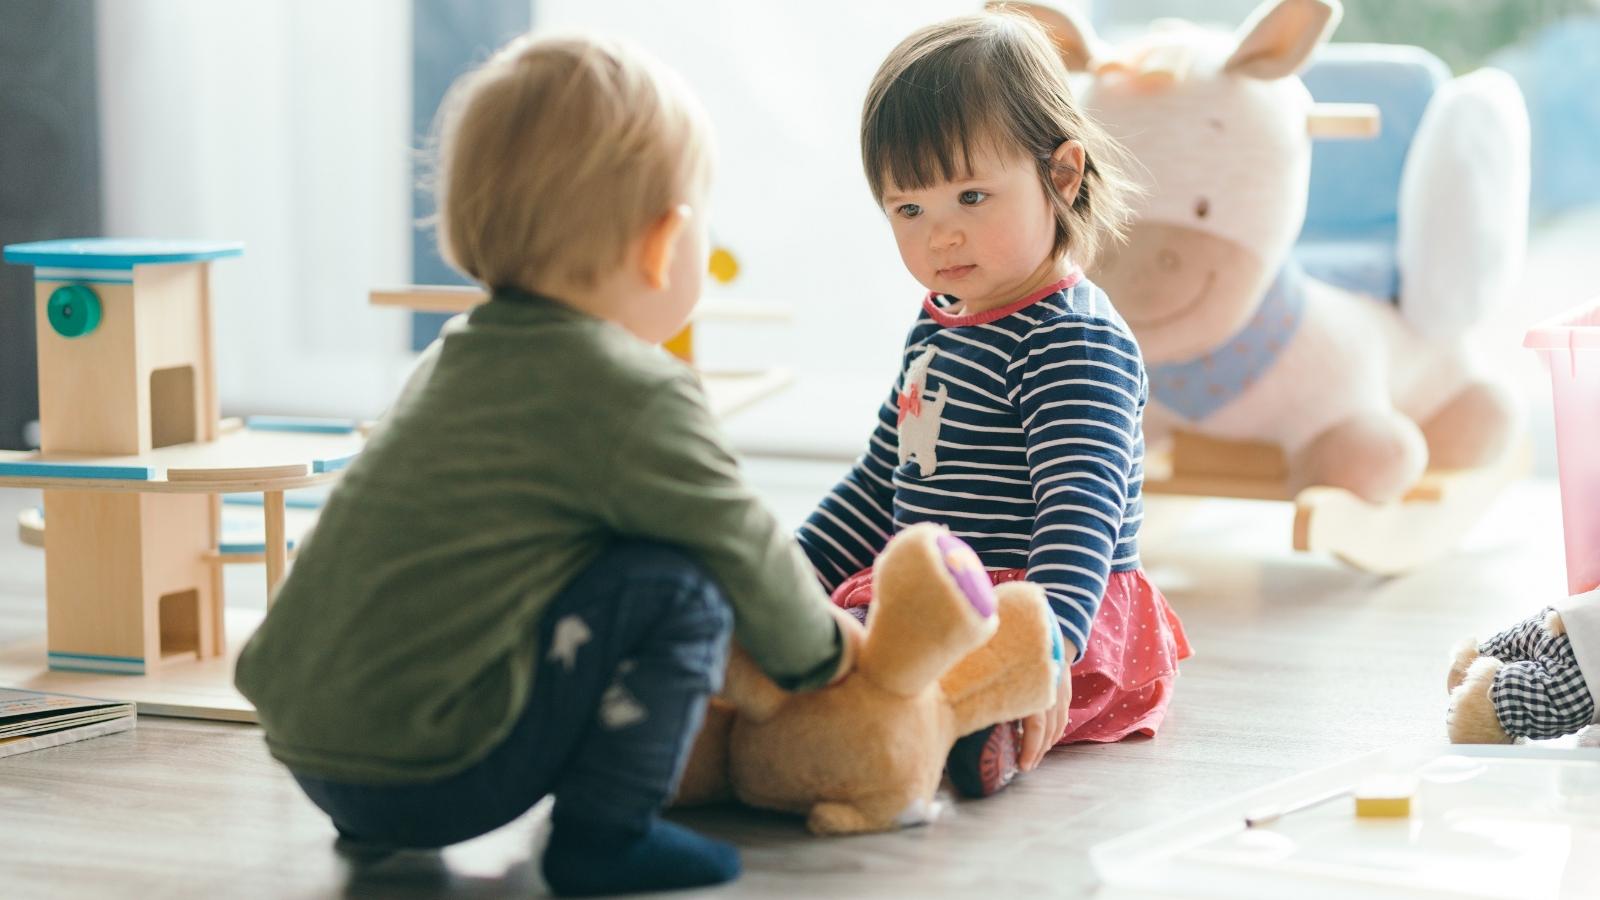 Zwei Kinder spielen zusammen mit einem Teddybären.